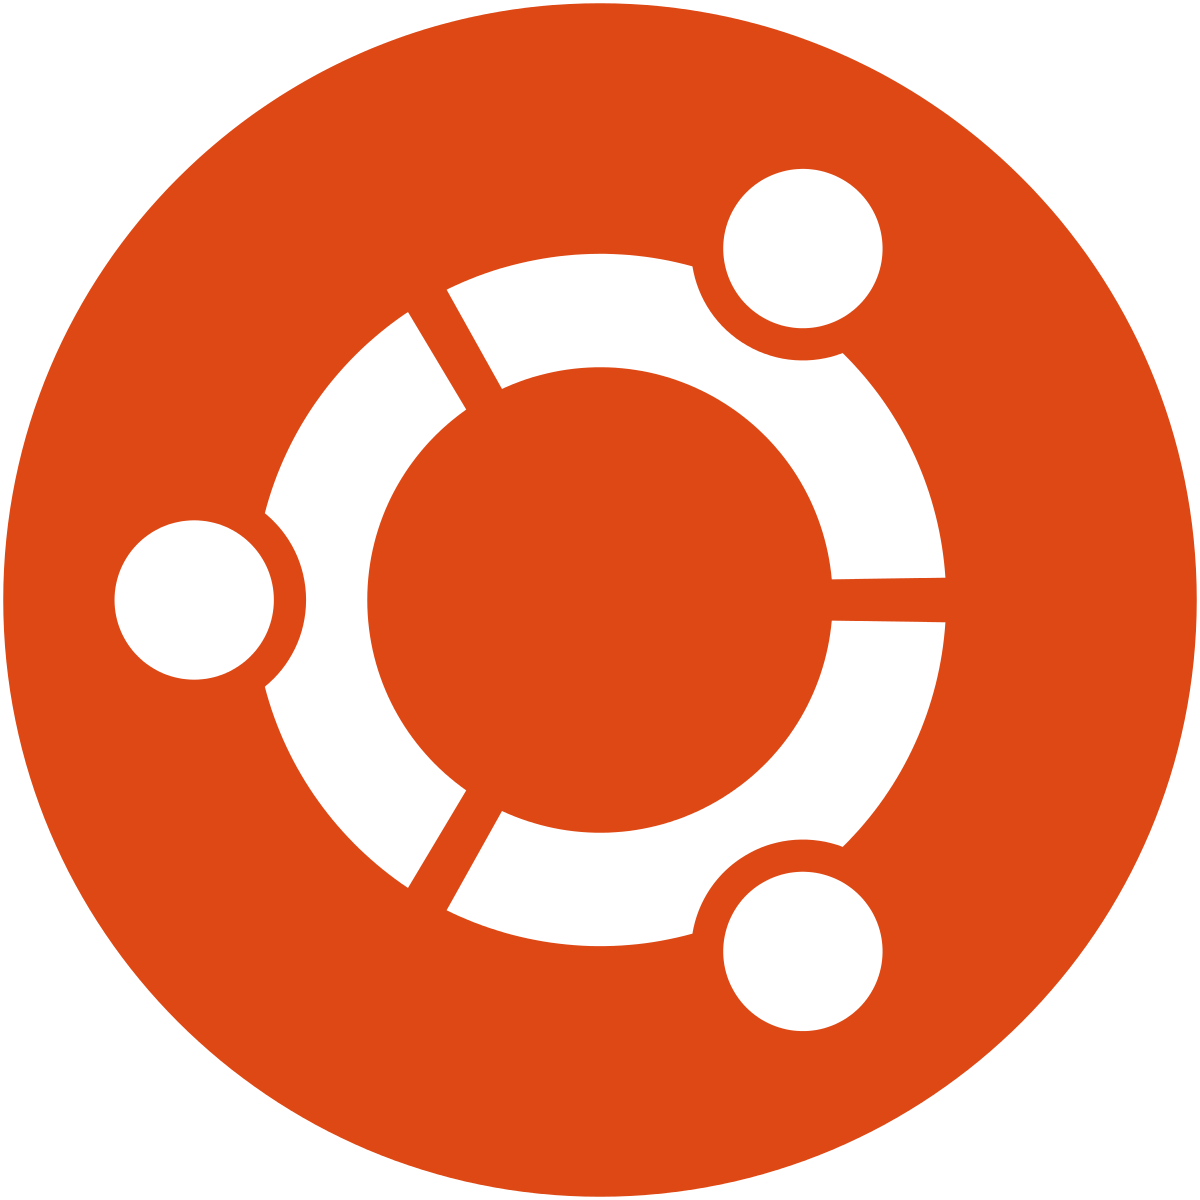 Ubuntu logo 2